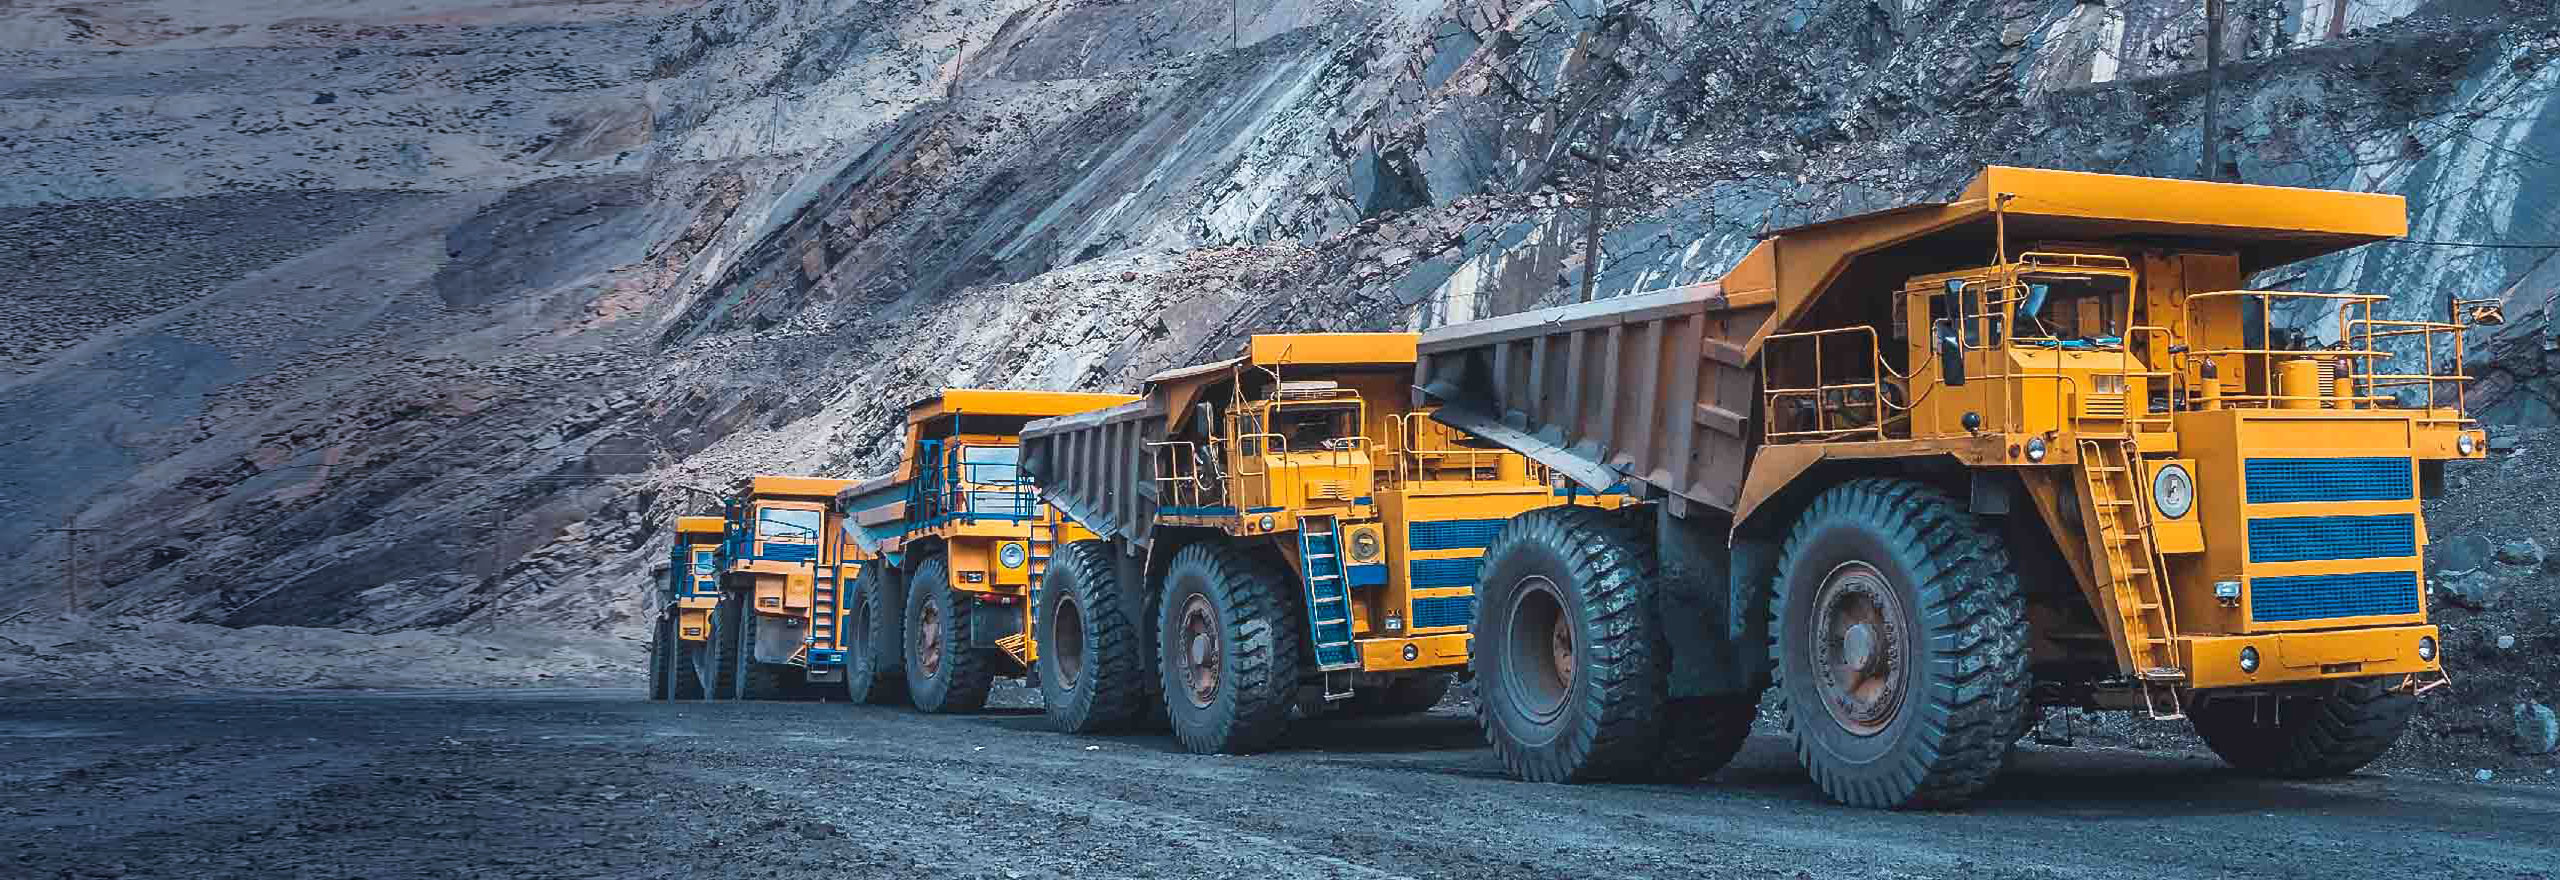 haul trucks driving on a mining road